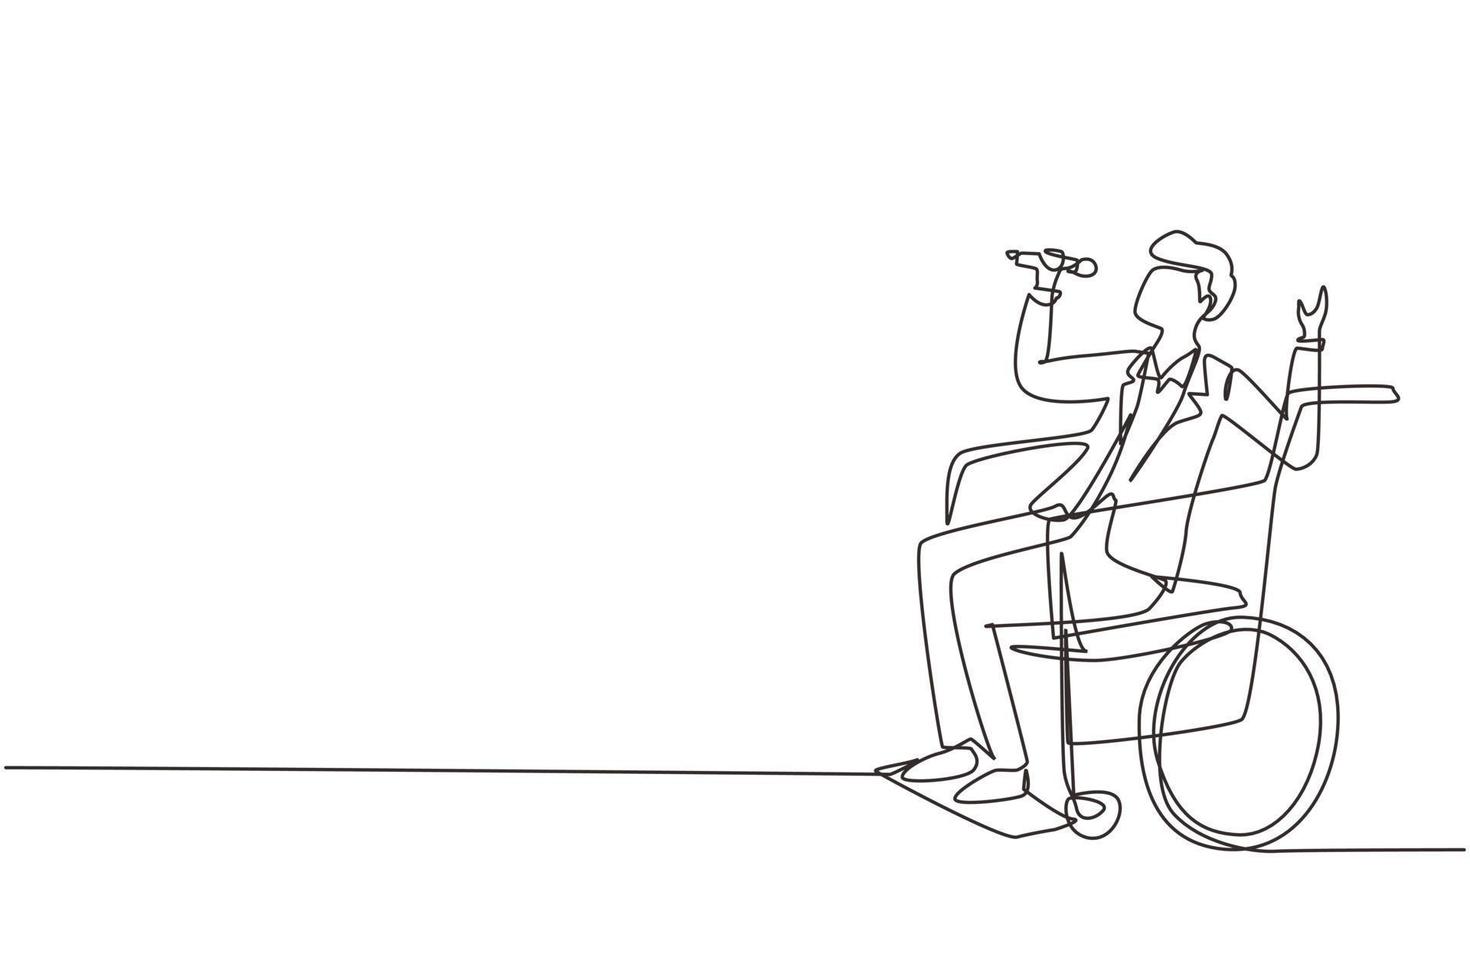 disegno a linea continua singola persona disabile che si gode la vita. bell'uomo seduto in sedia a rotelle che canta al karaoke bar. trascorrere del tempo in un luogo ricreativo. illustrazione vettoriale di un disegno di linea